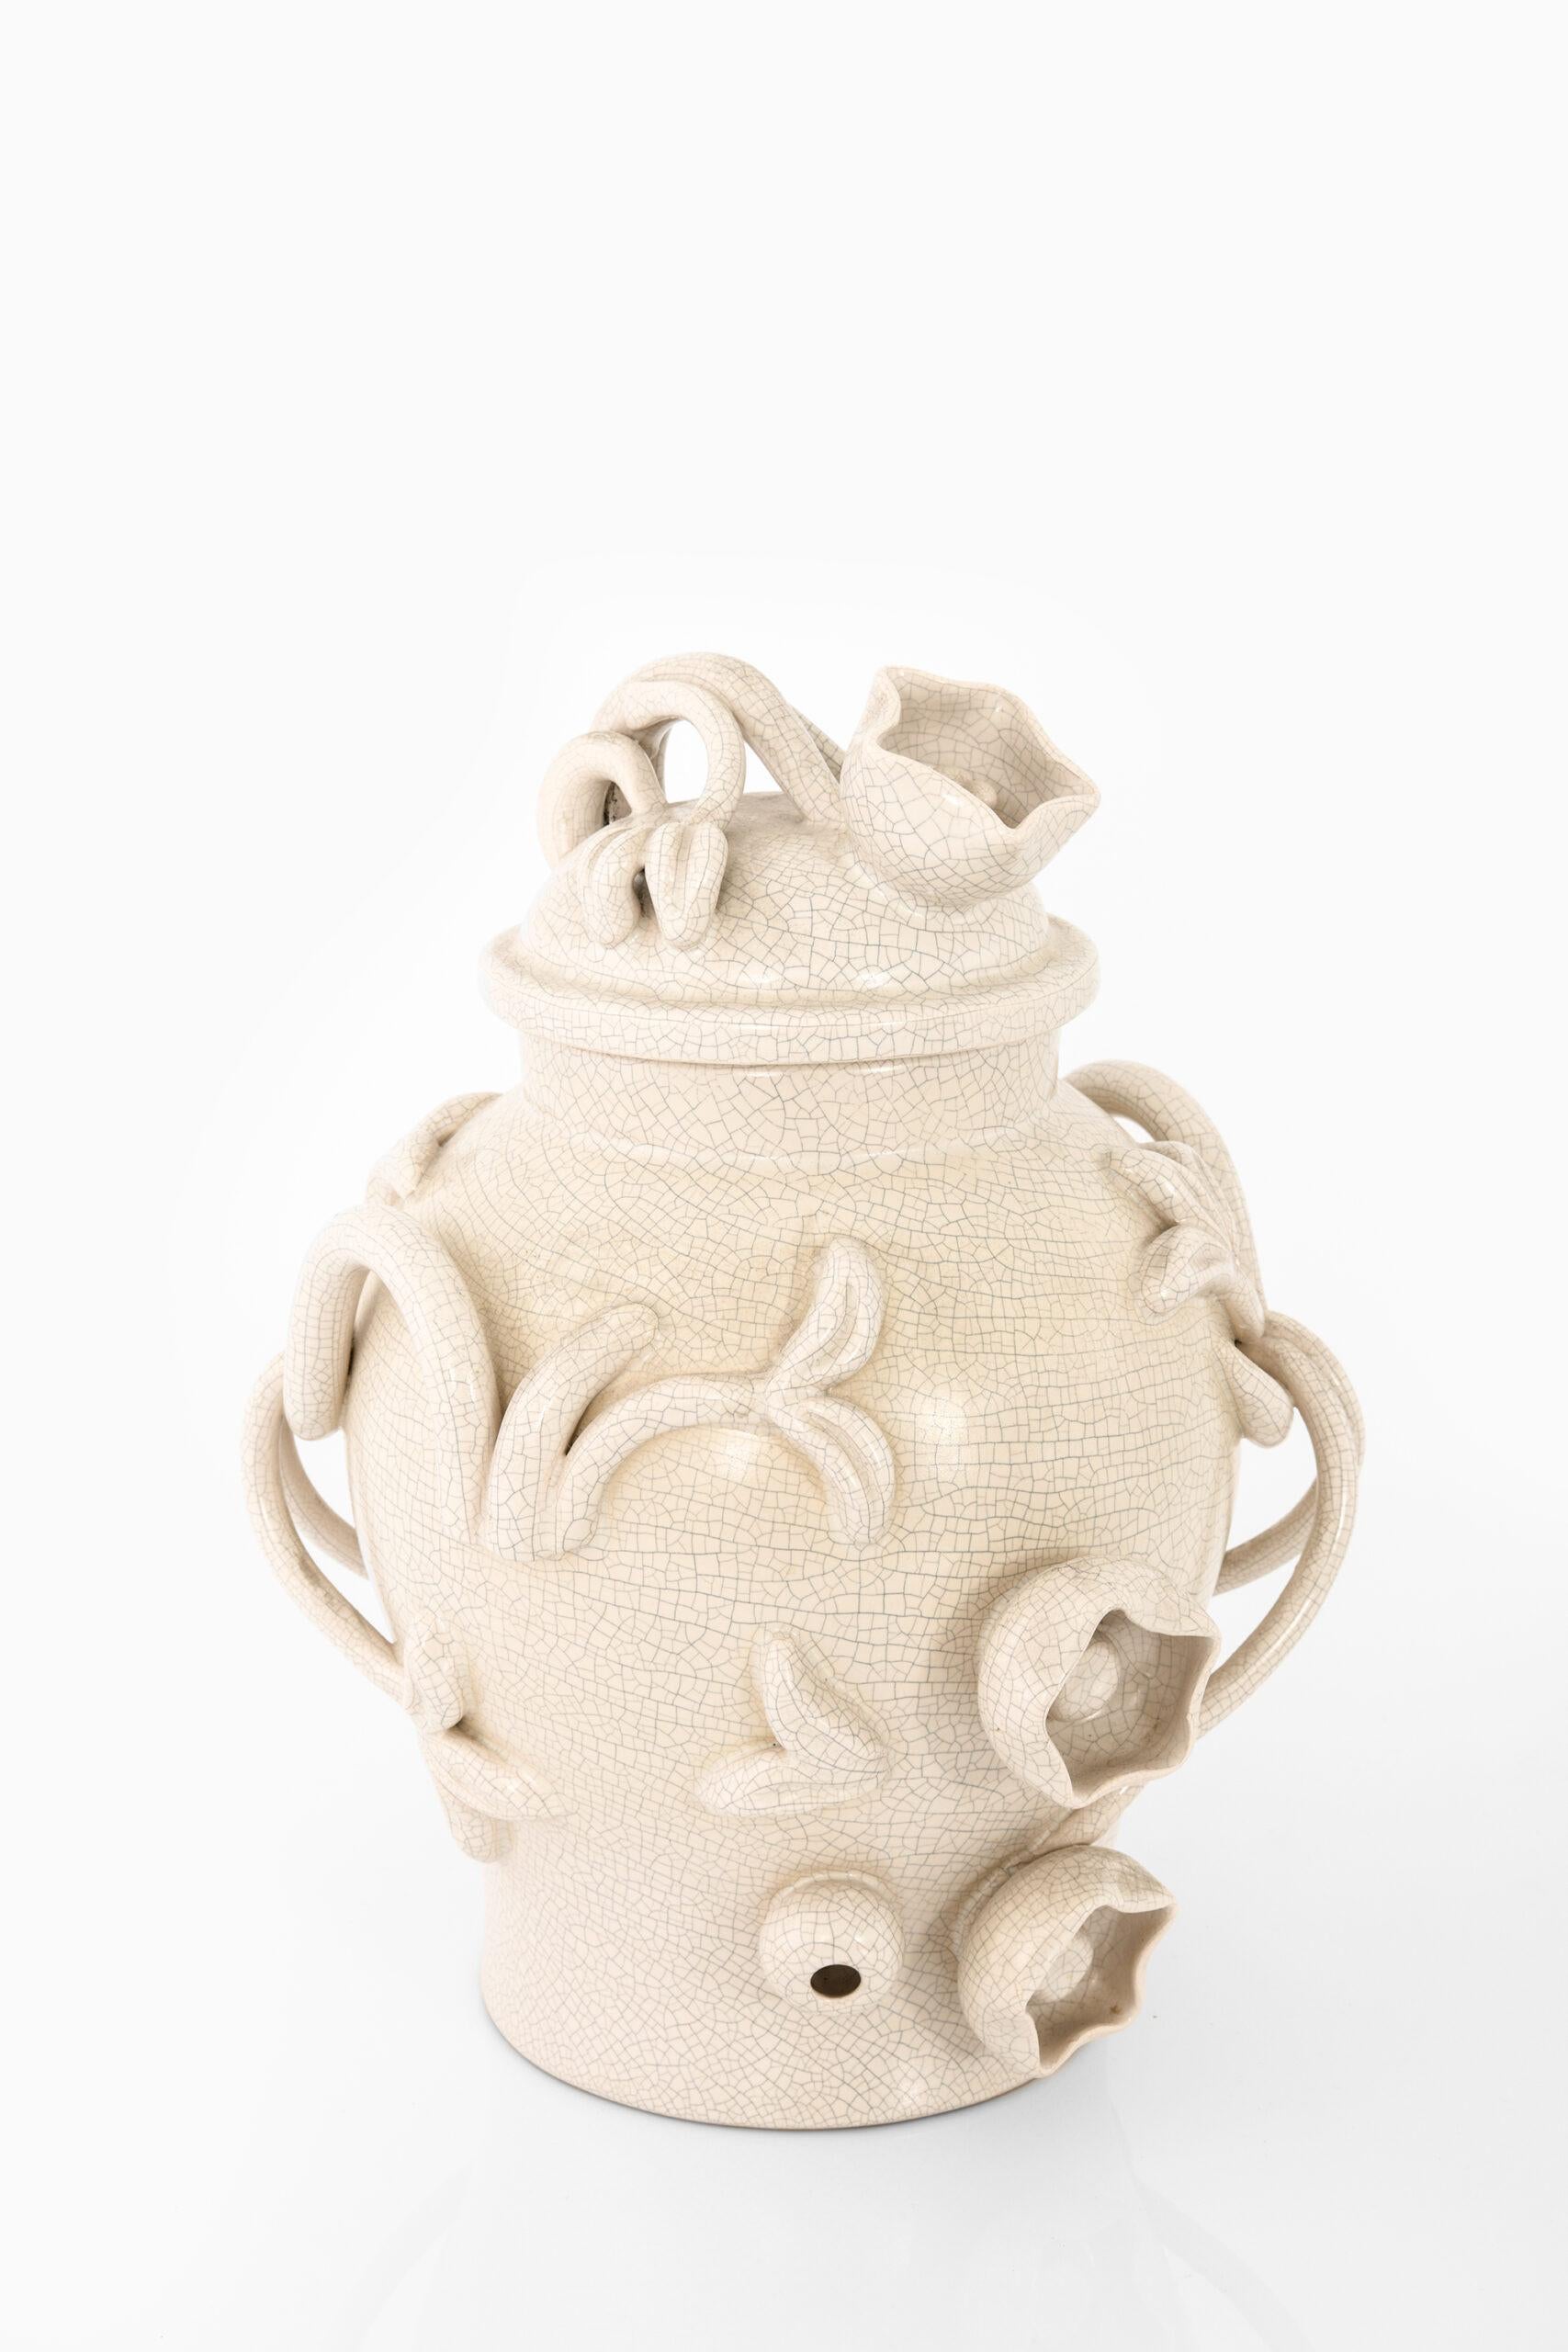 Rare ceramic vase with lid designed by Eva Jancke-Björk. Produced by Bo Fajans Gefle, Made in Sweden.